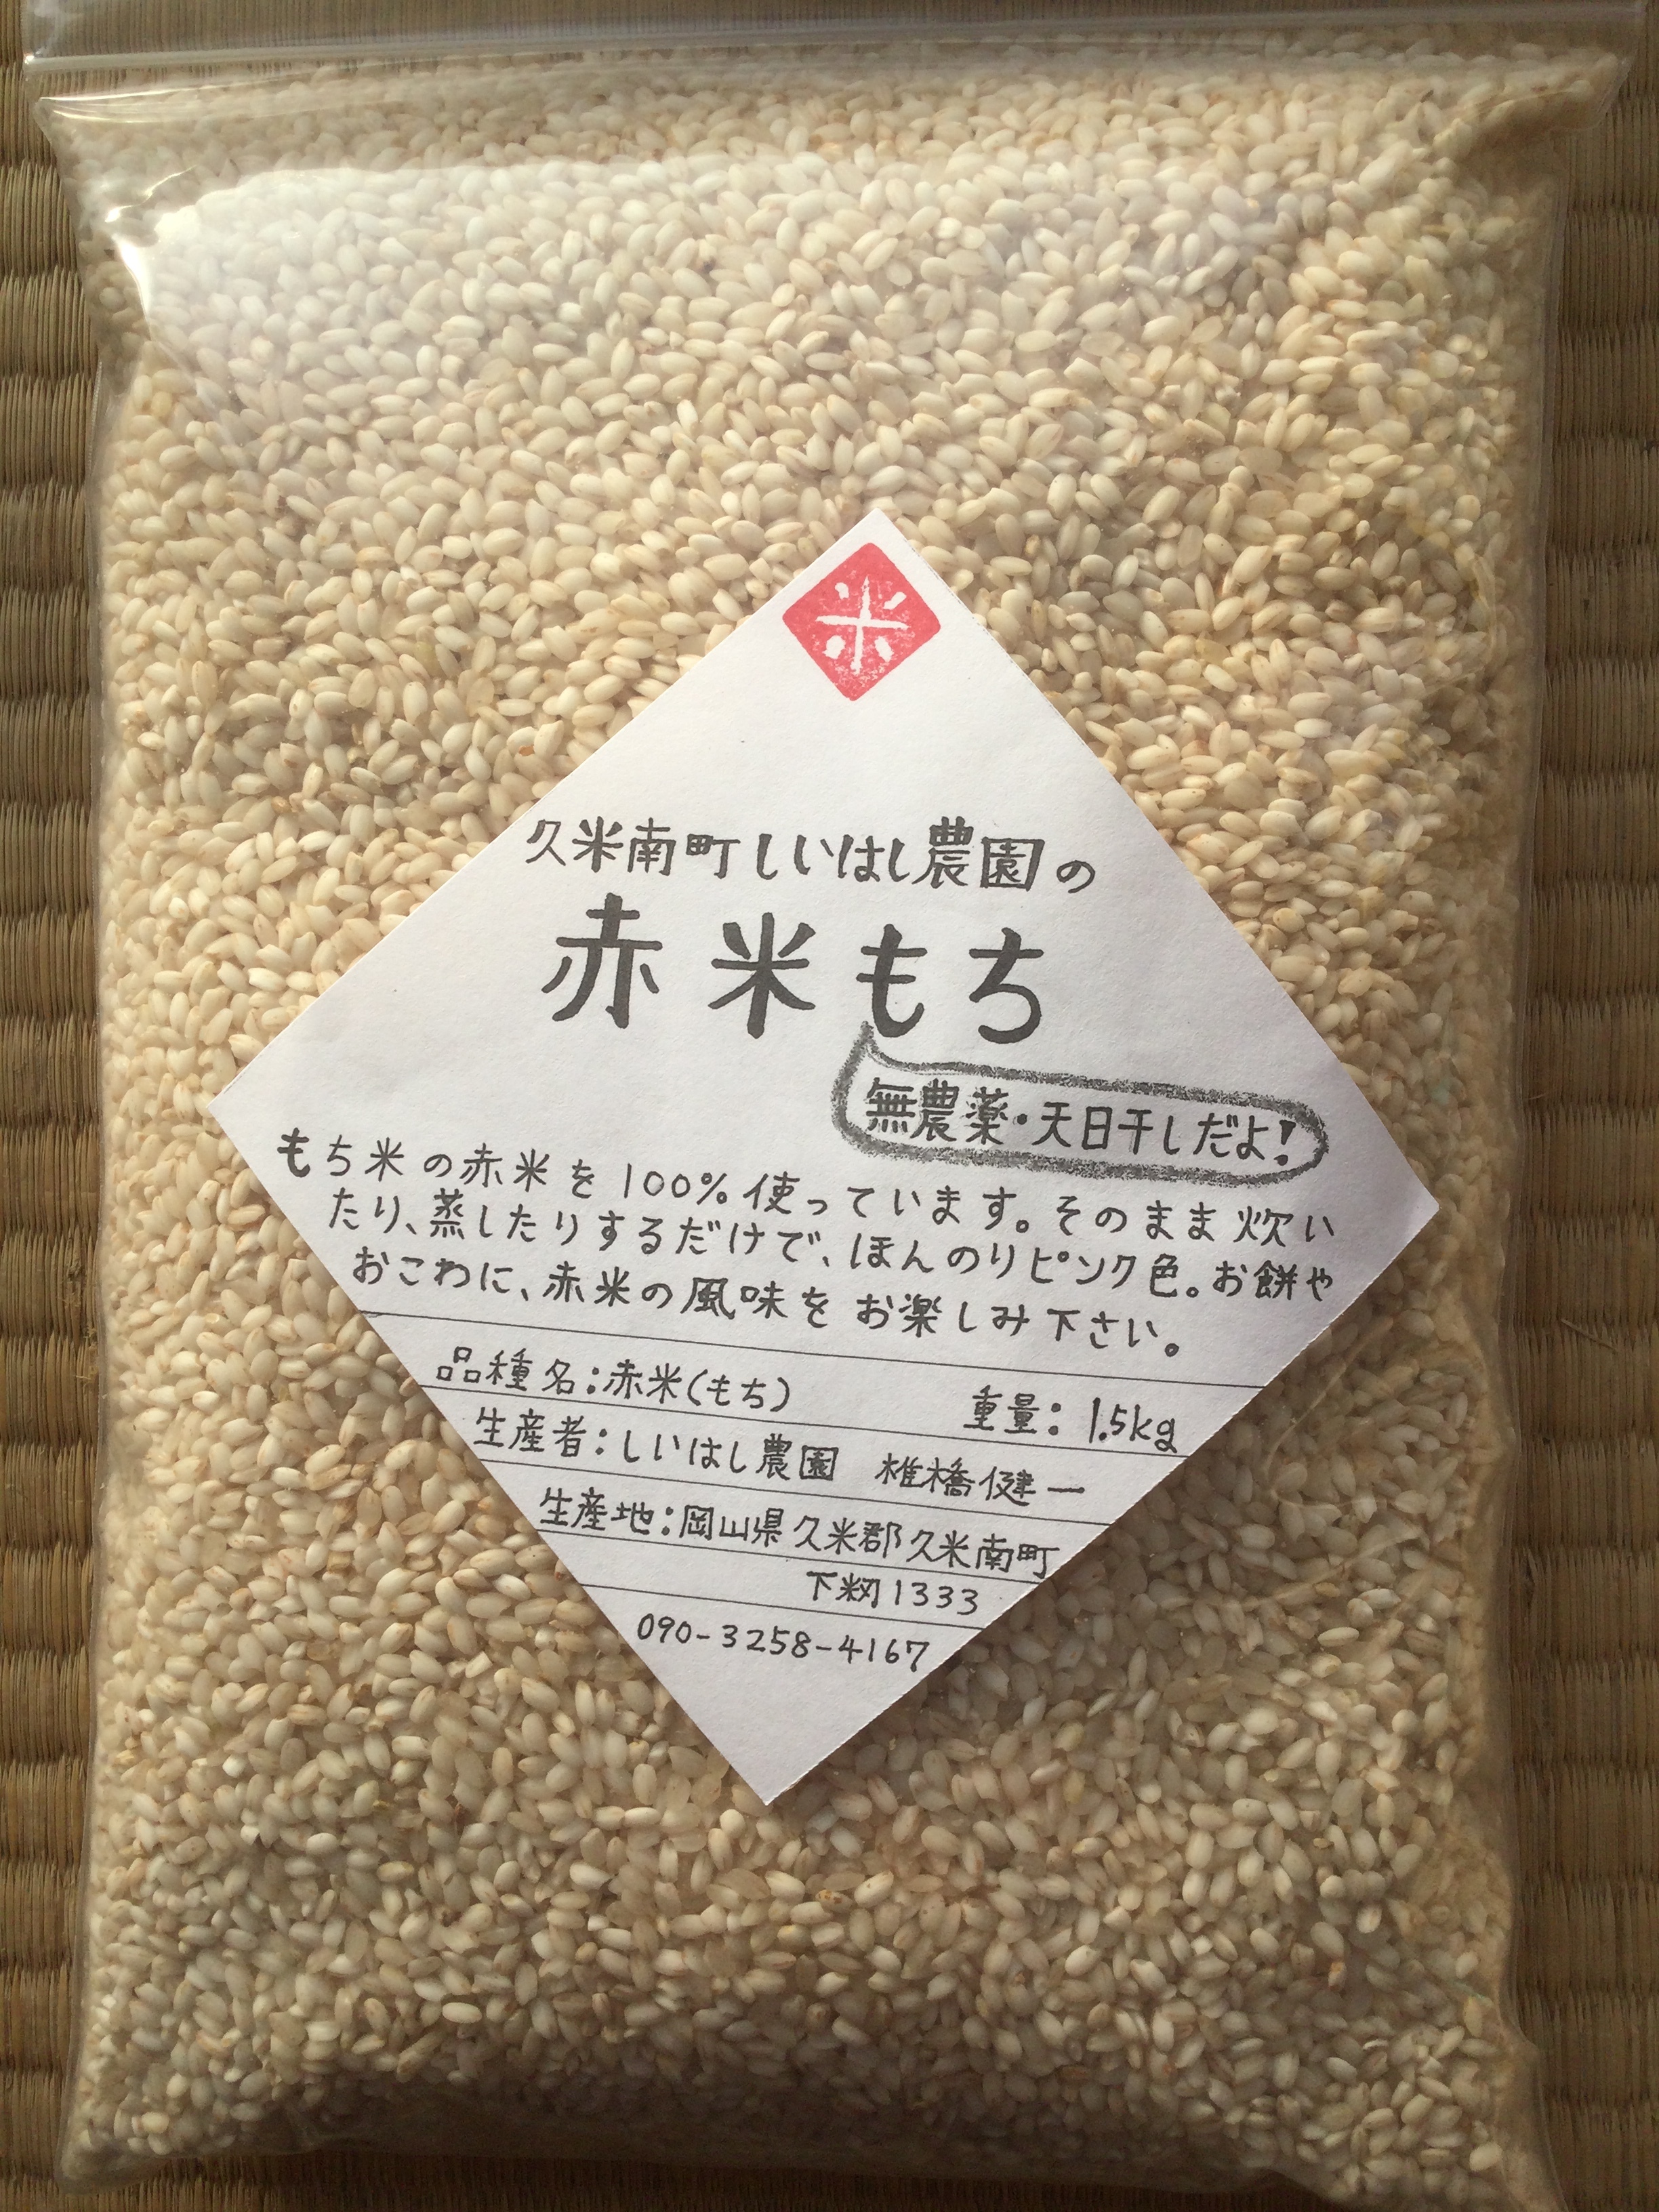 にこまる精米20kg 鹿児島県 H30年産食品